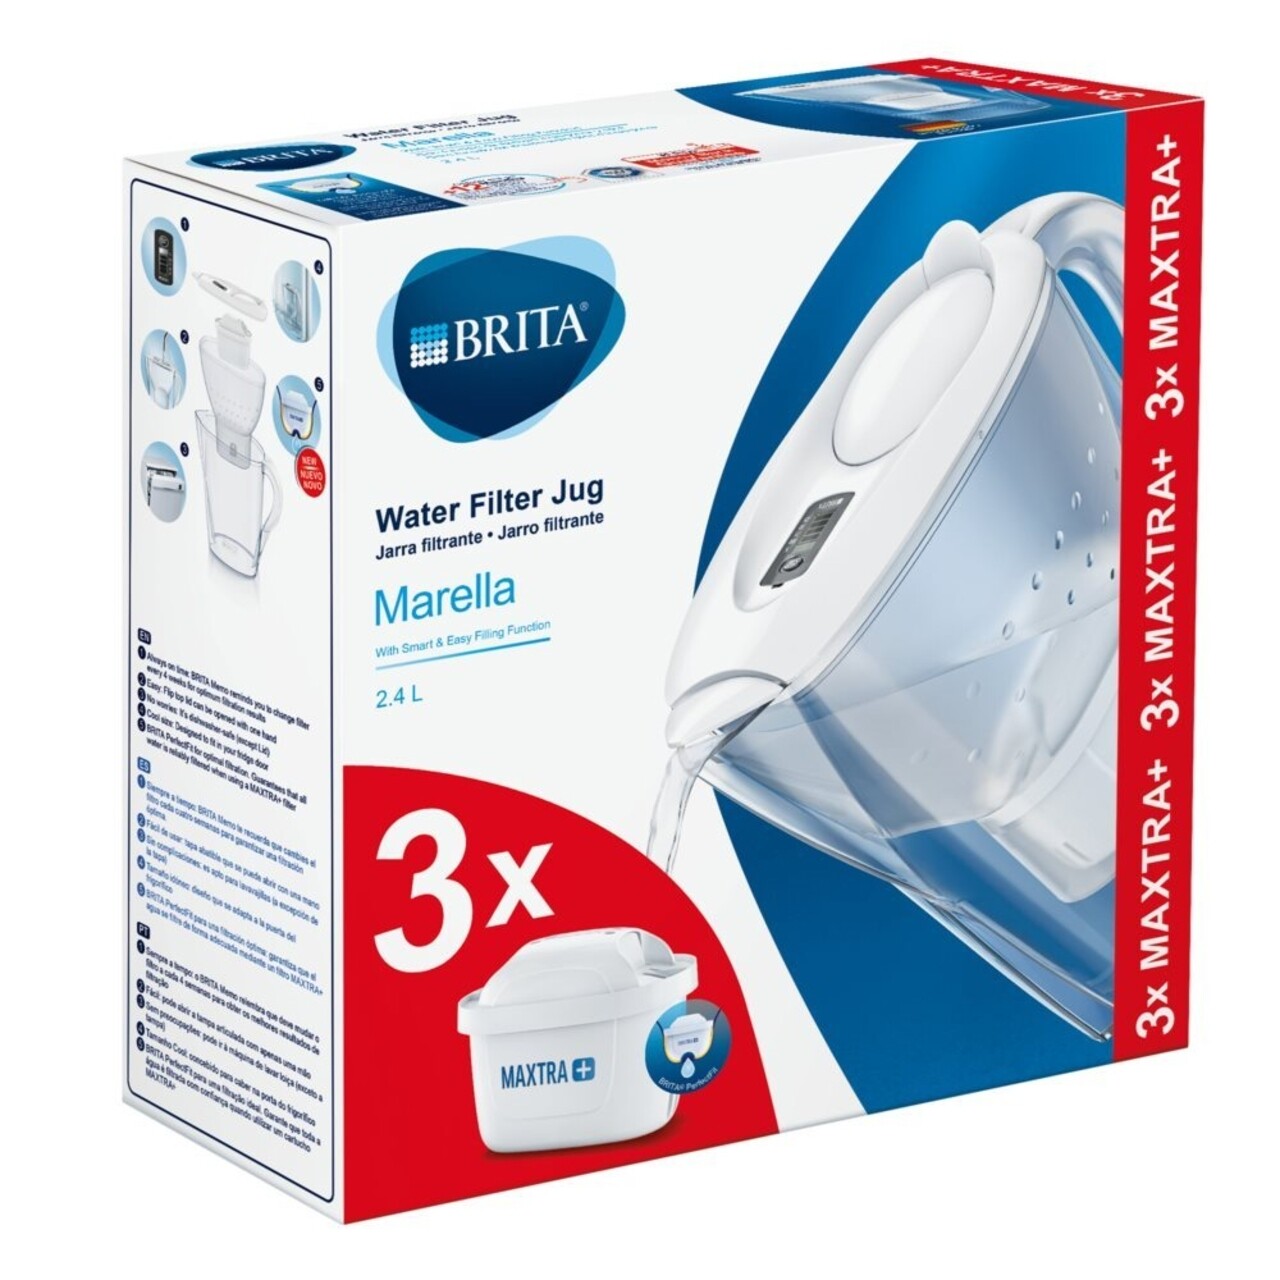 Cana Filtranta Brita, Marella MAXTRA+, Plastic, 2.4 L, Starter Pack + 3 Filtre, Alb